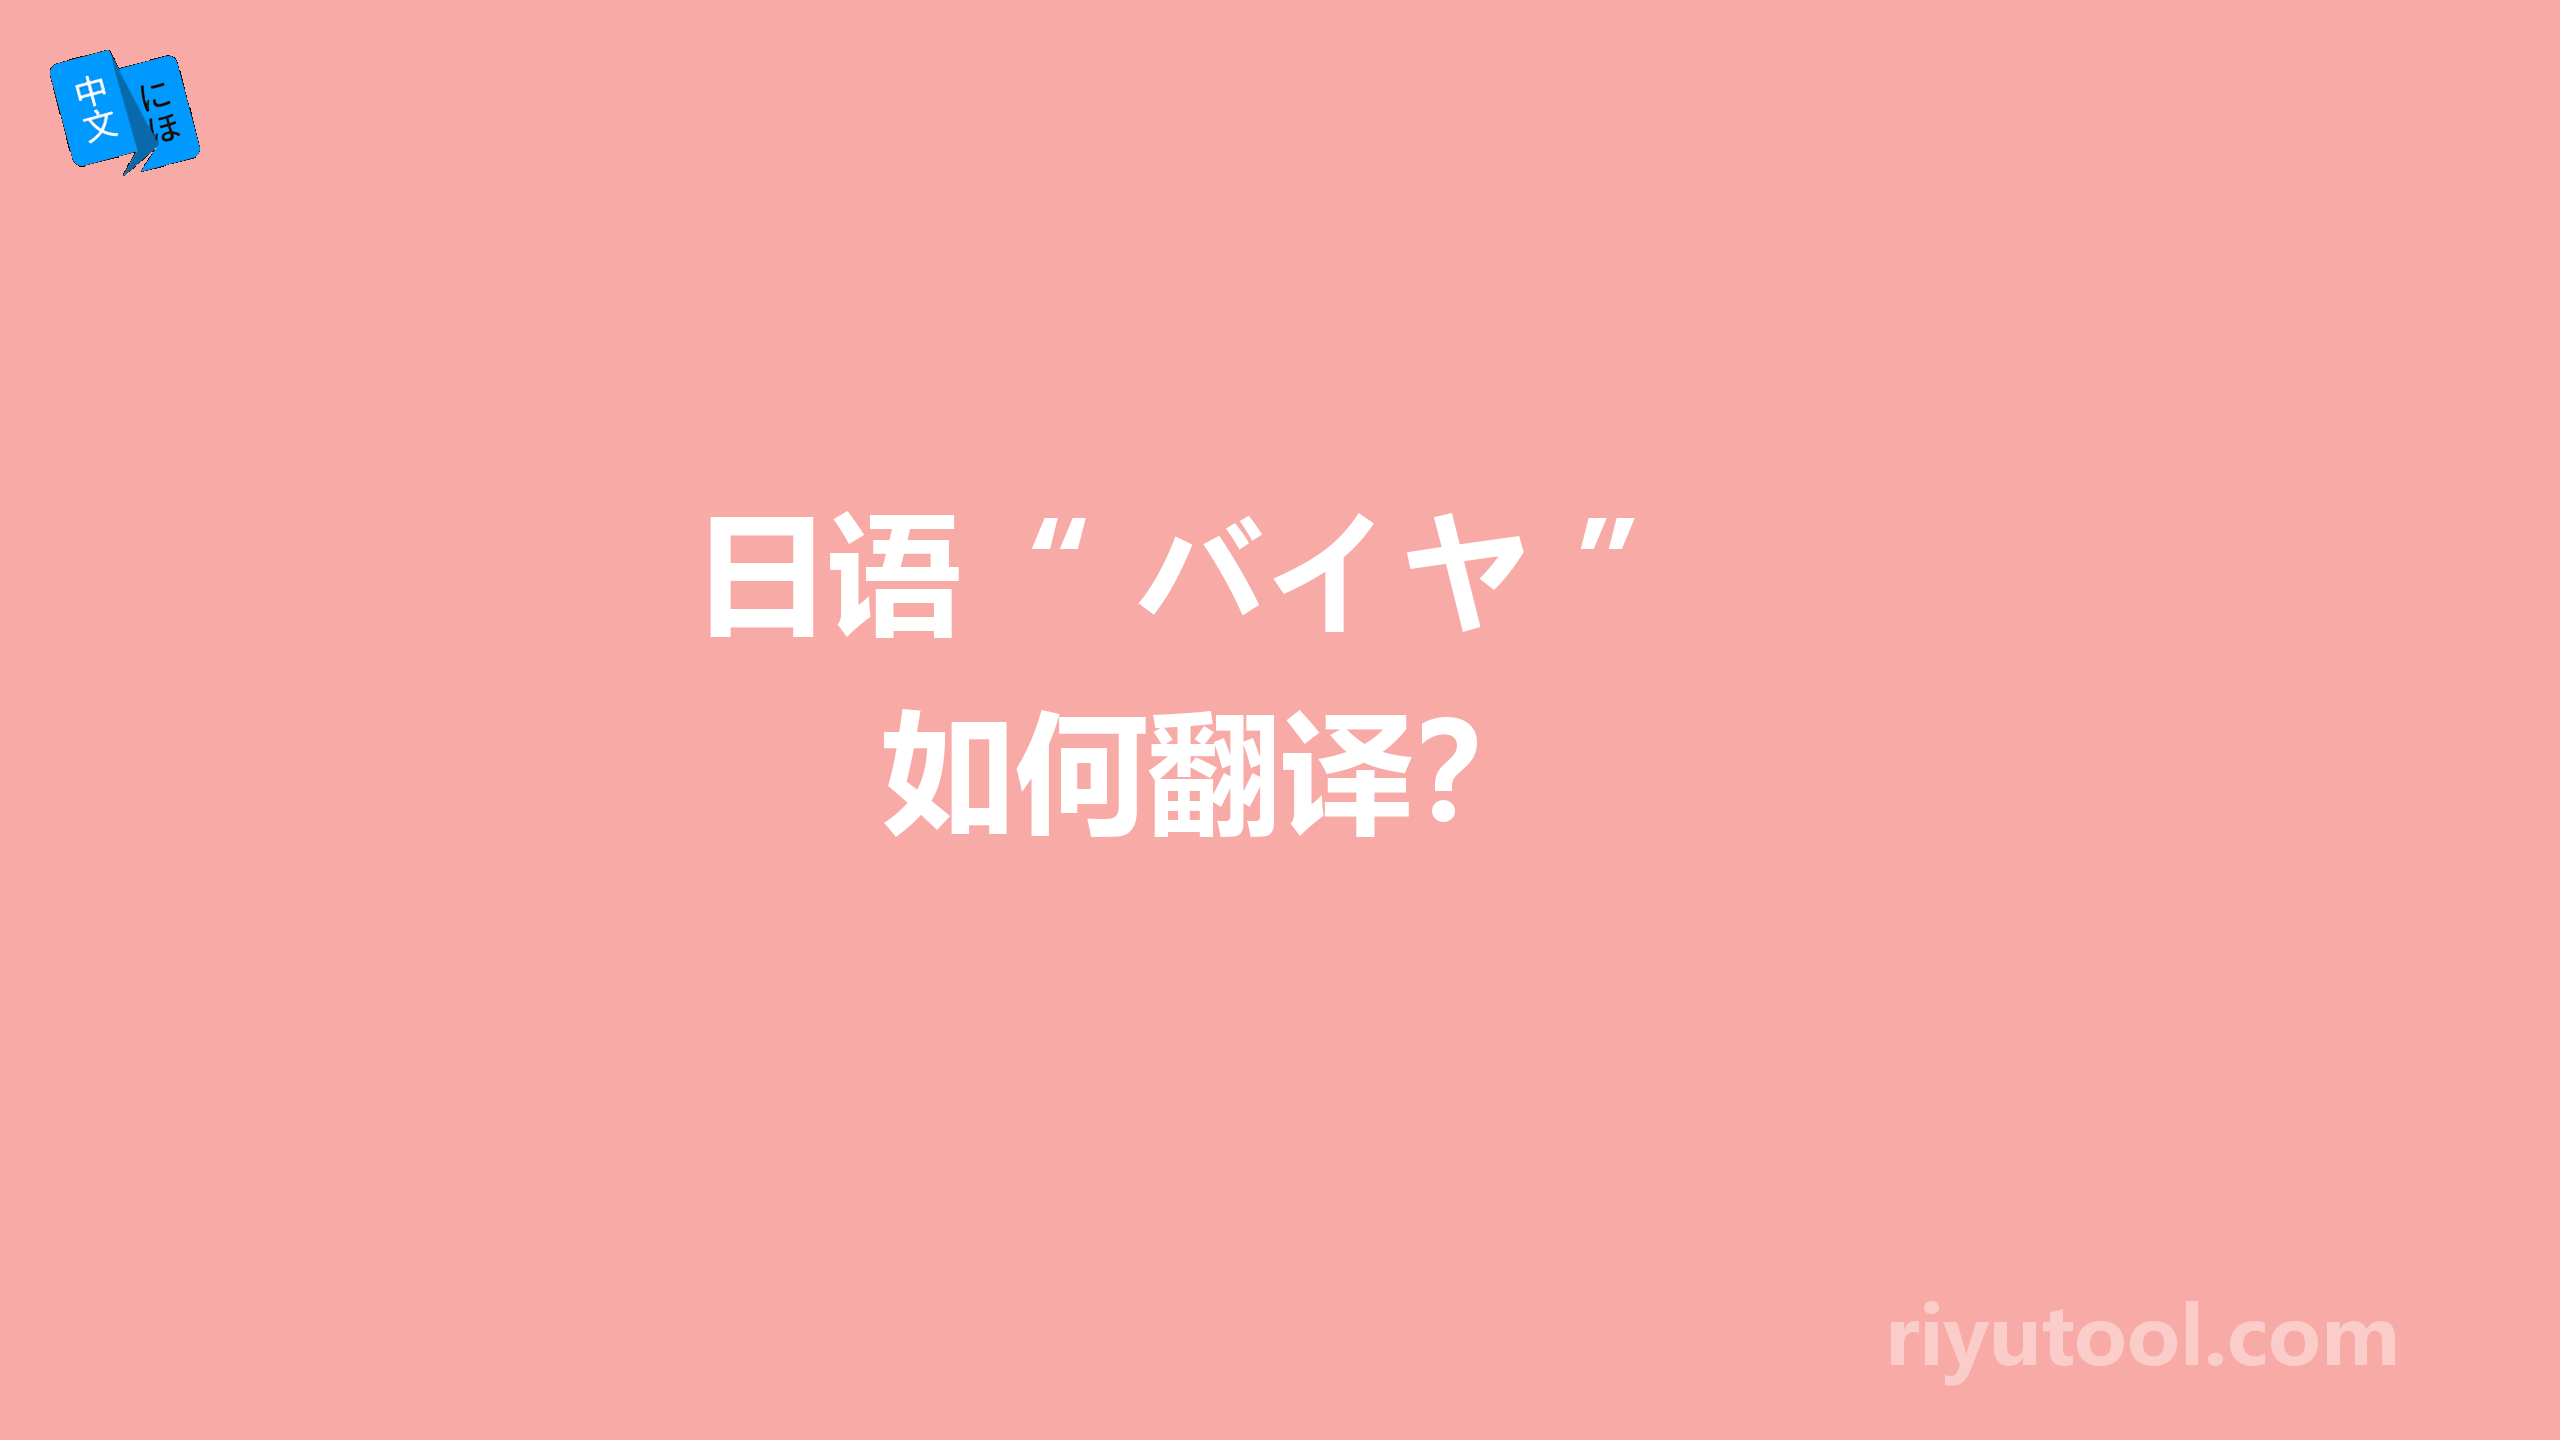  日语“ バイヤ ” 如何翻译？ 